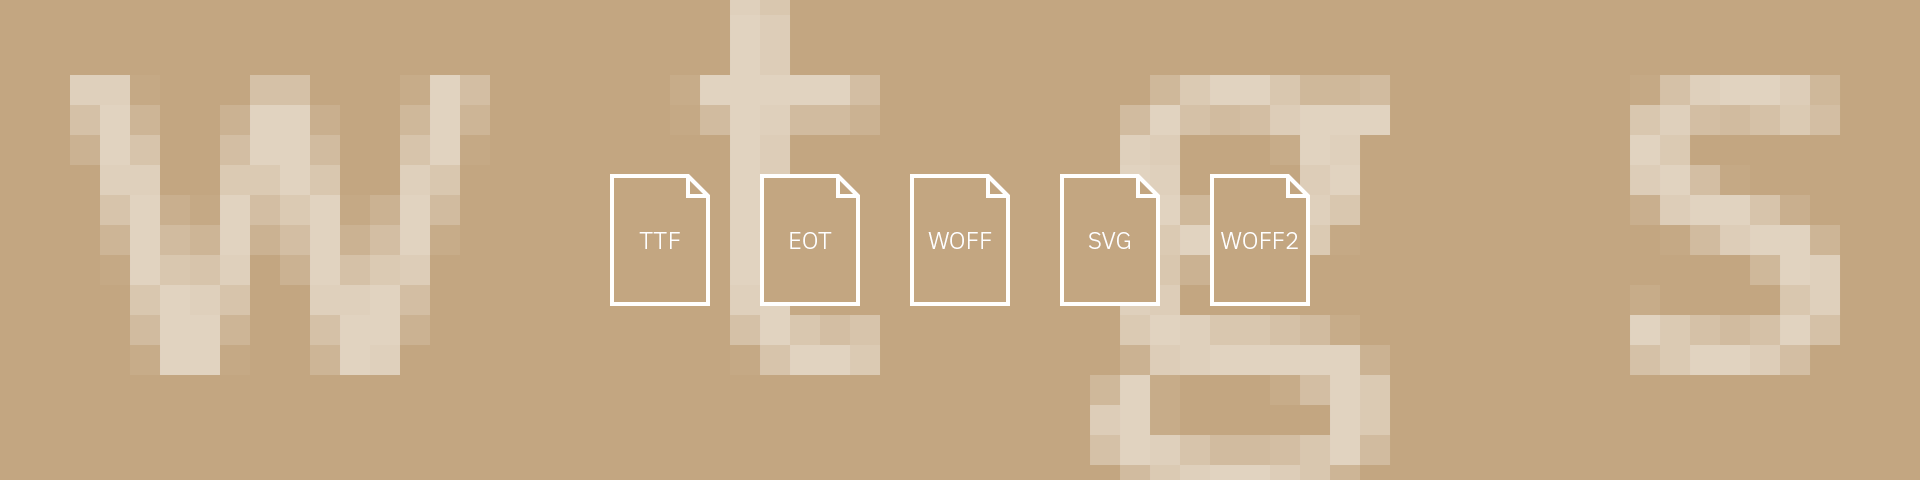 Grafische Übersicht über Webfont-Formate: TTF, EOT, WOFF, SVG und WOFF2.